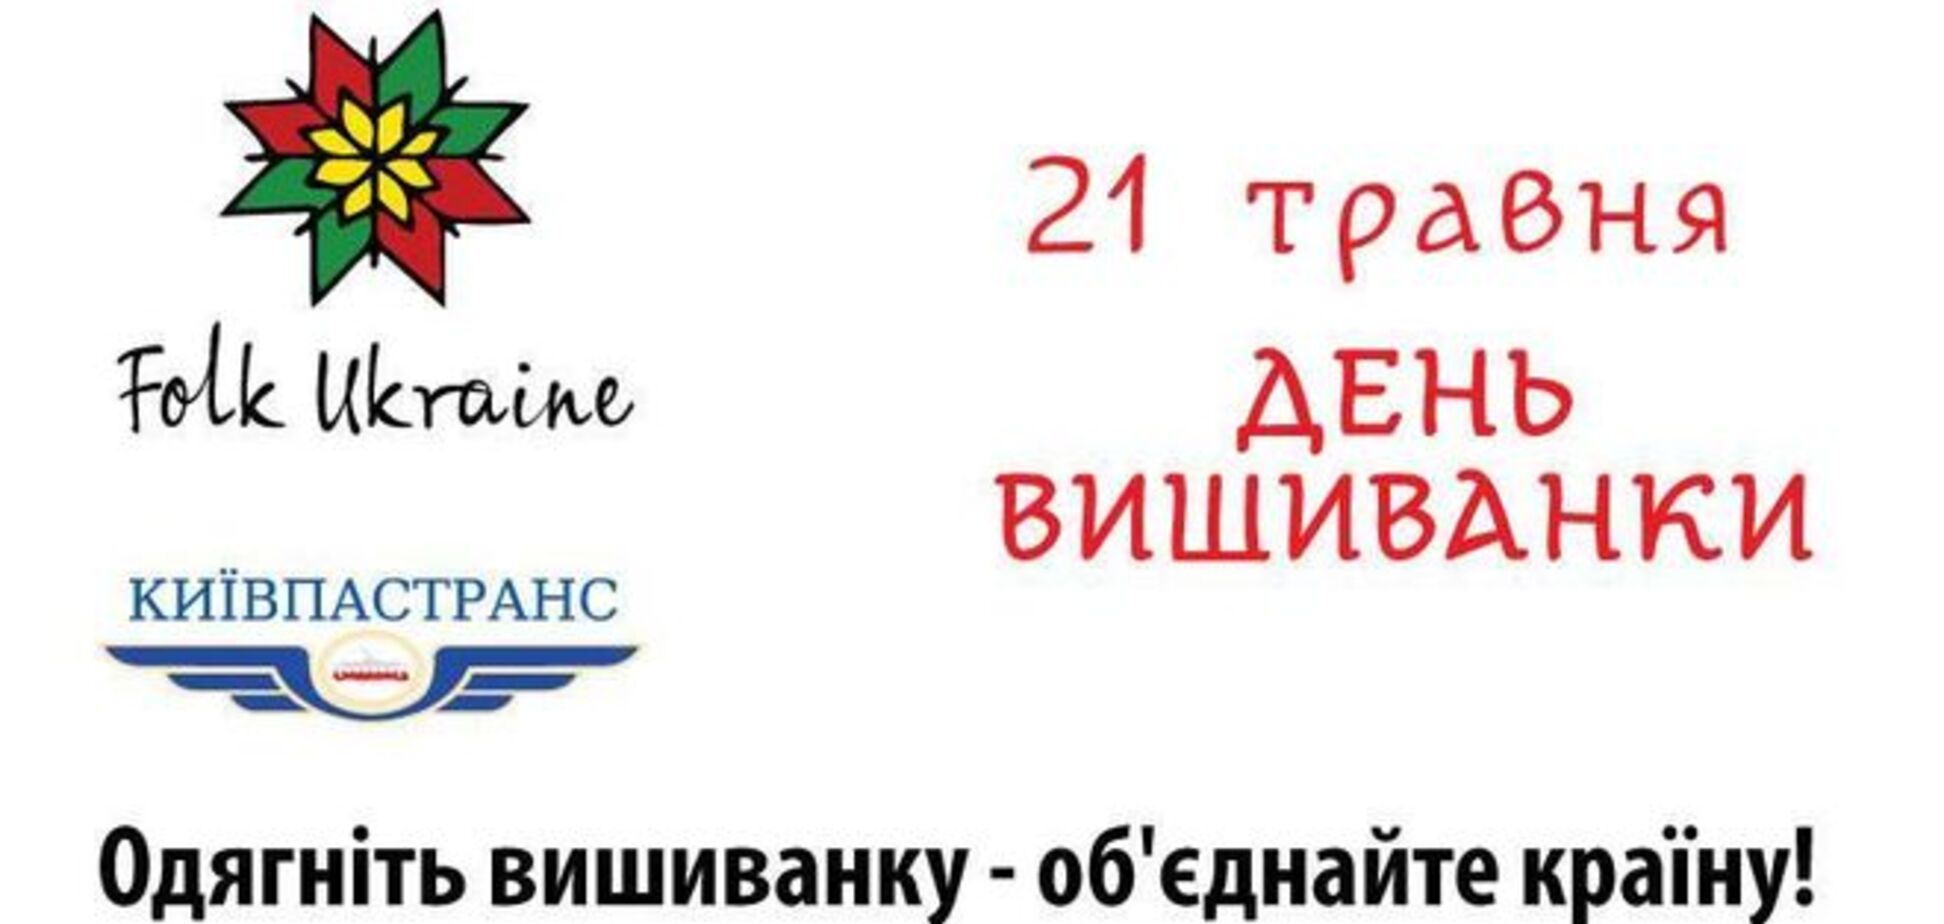 Киевские кондукторы 21 мая наденут вышиванки